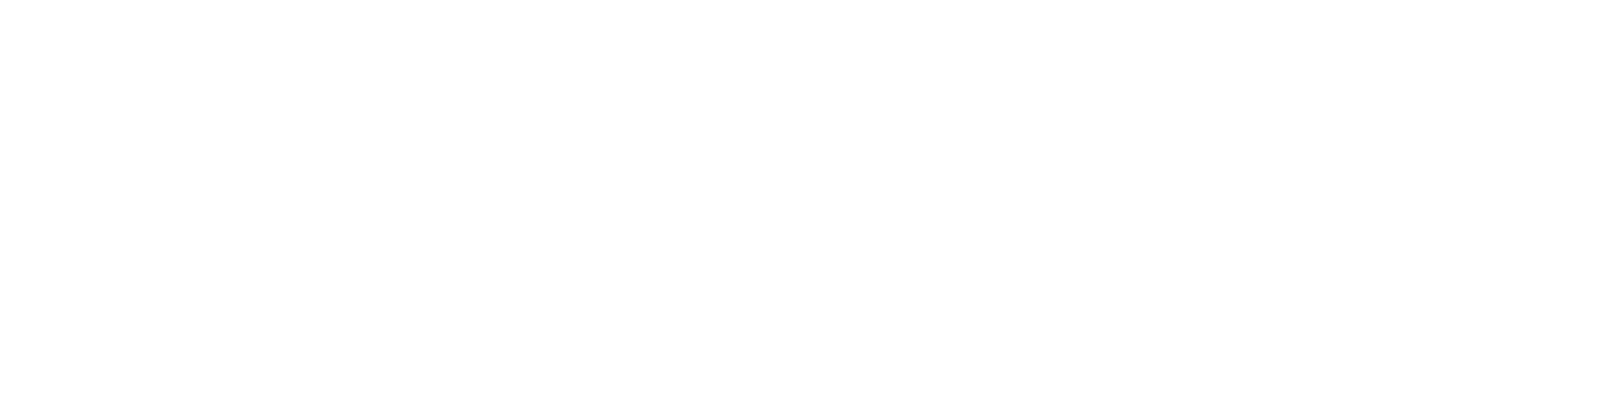 Logo étude de cas Data Driven